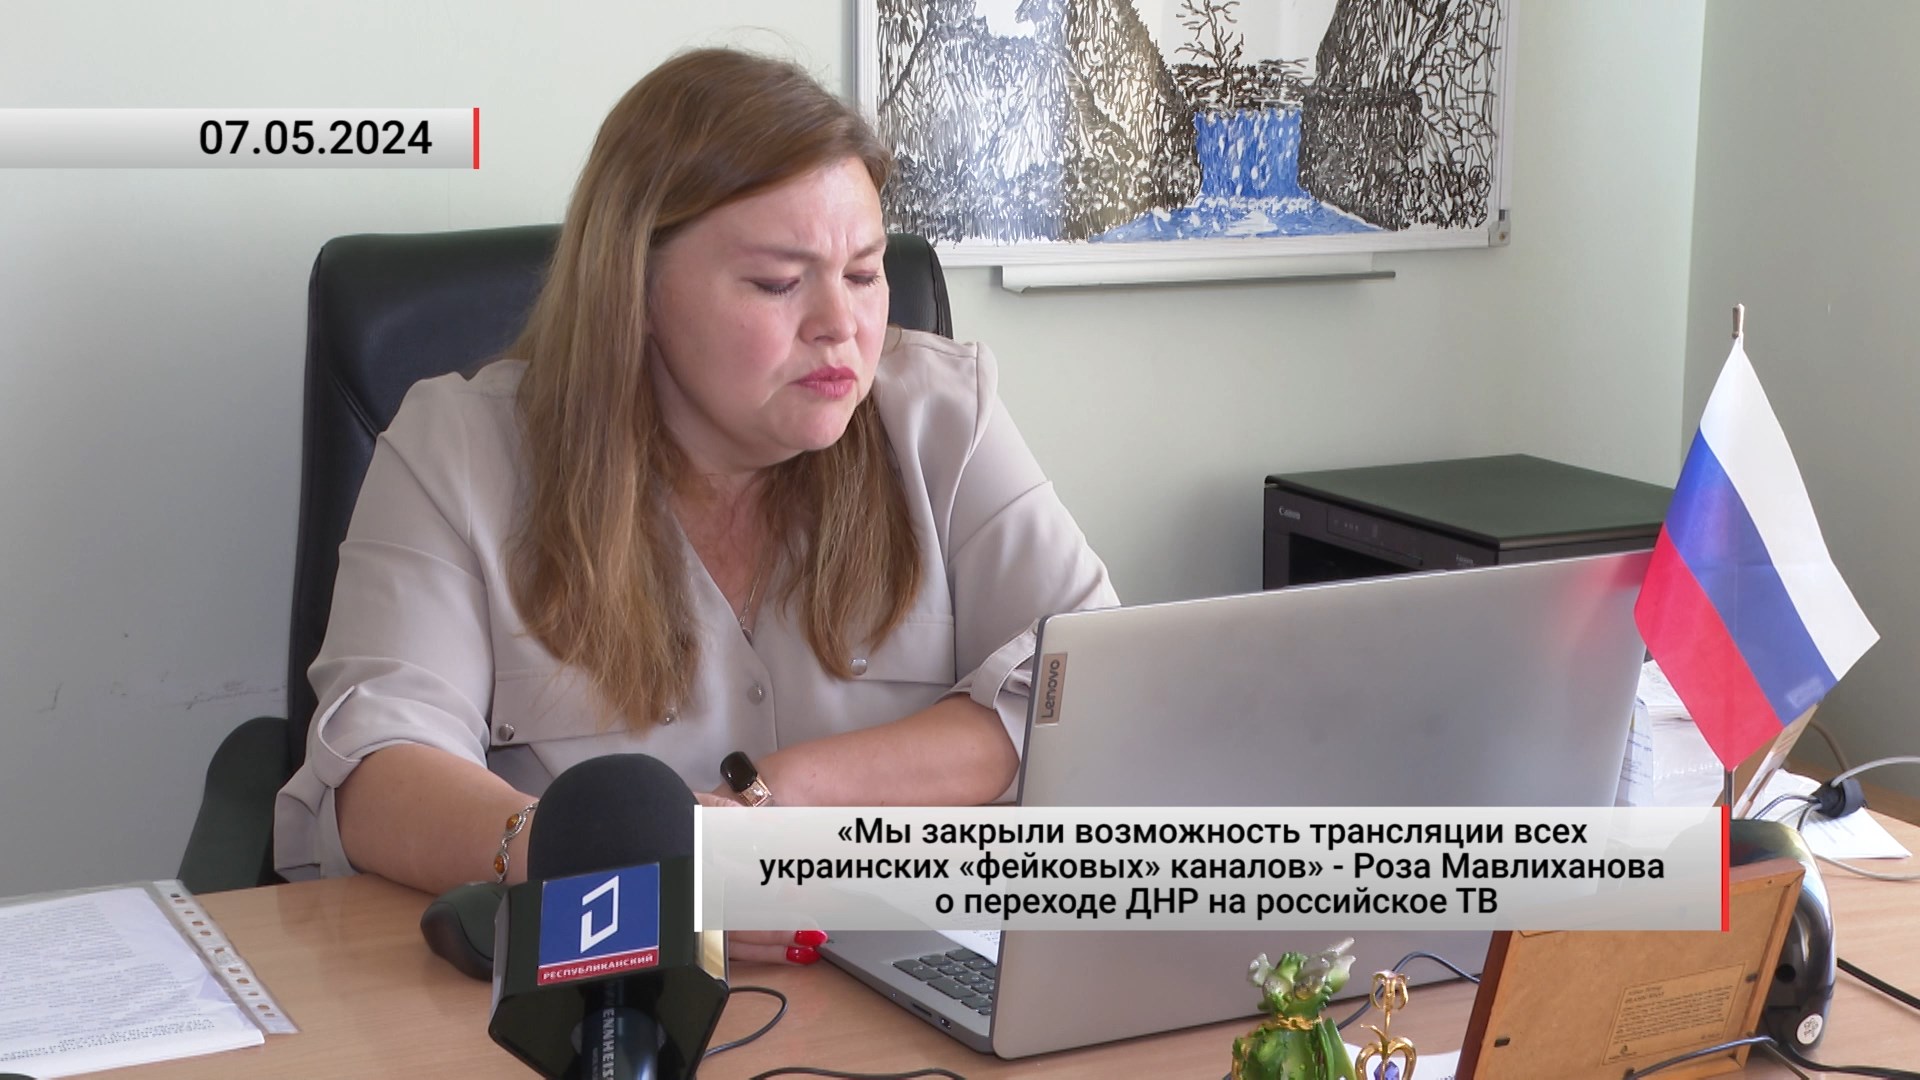 «Мы закрыли возможность трансляции всех украинских «фейковых» каналов». Актуально. 07.05.2024